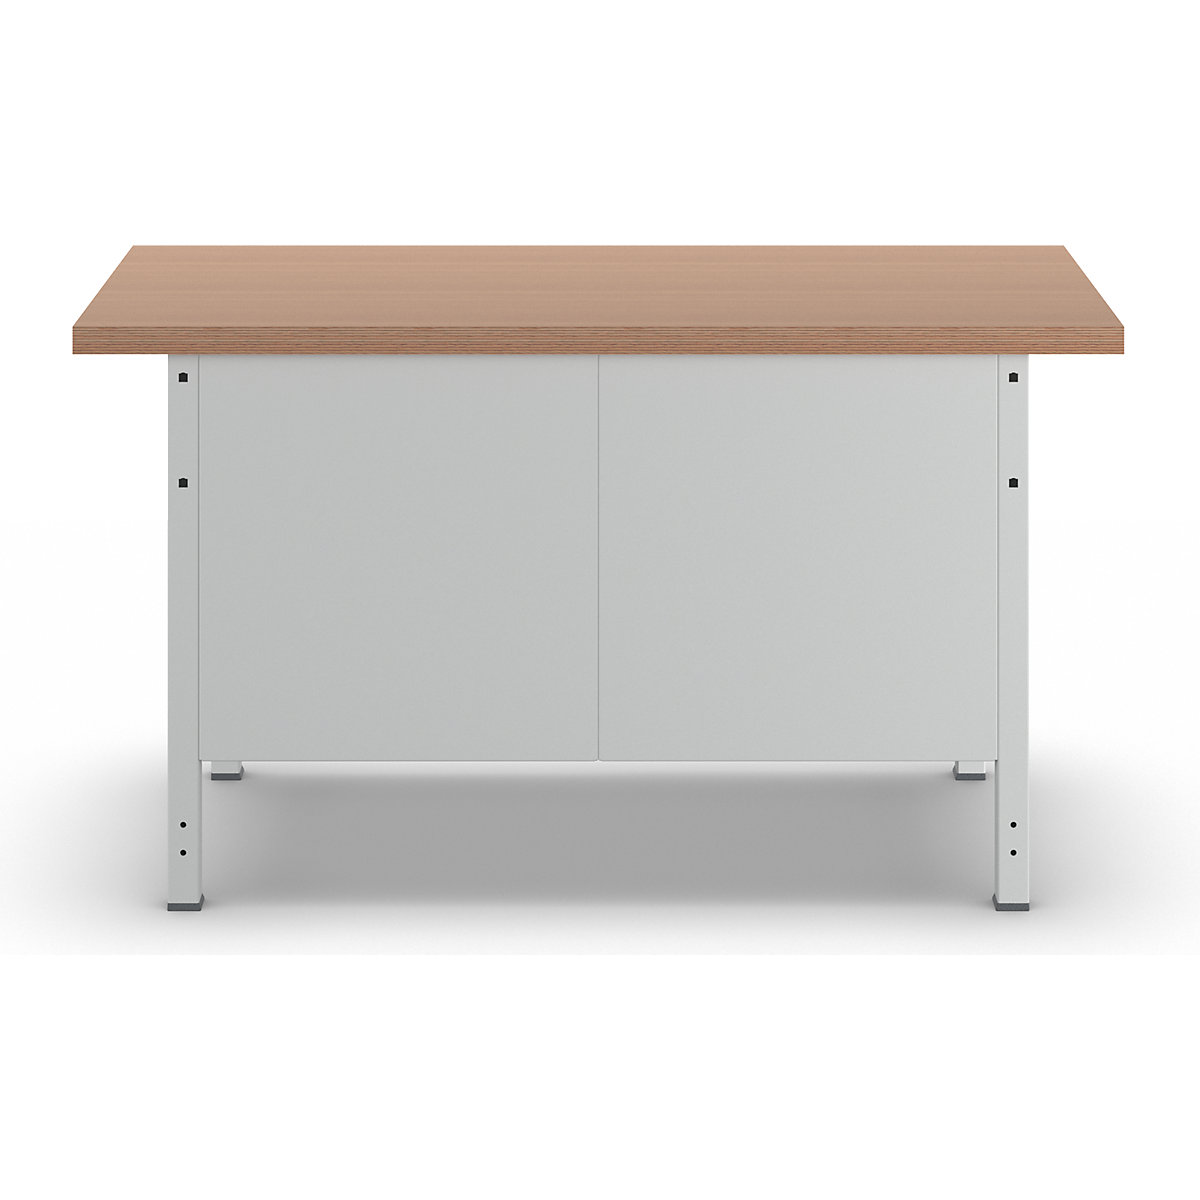 Stół warsztatowy, konstrukcja ramowa – RAU (Zdjęcie produktu 7)-6